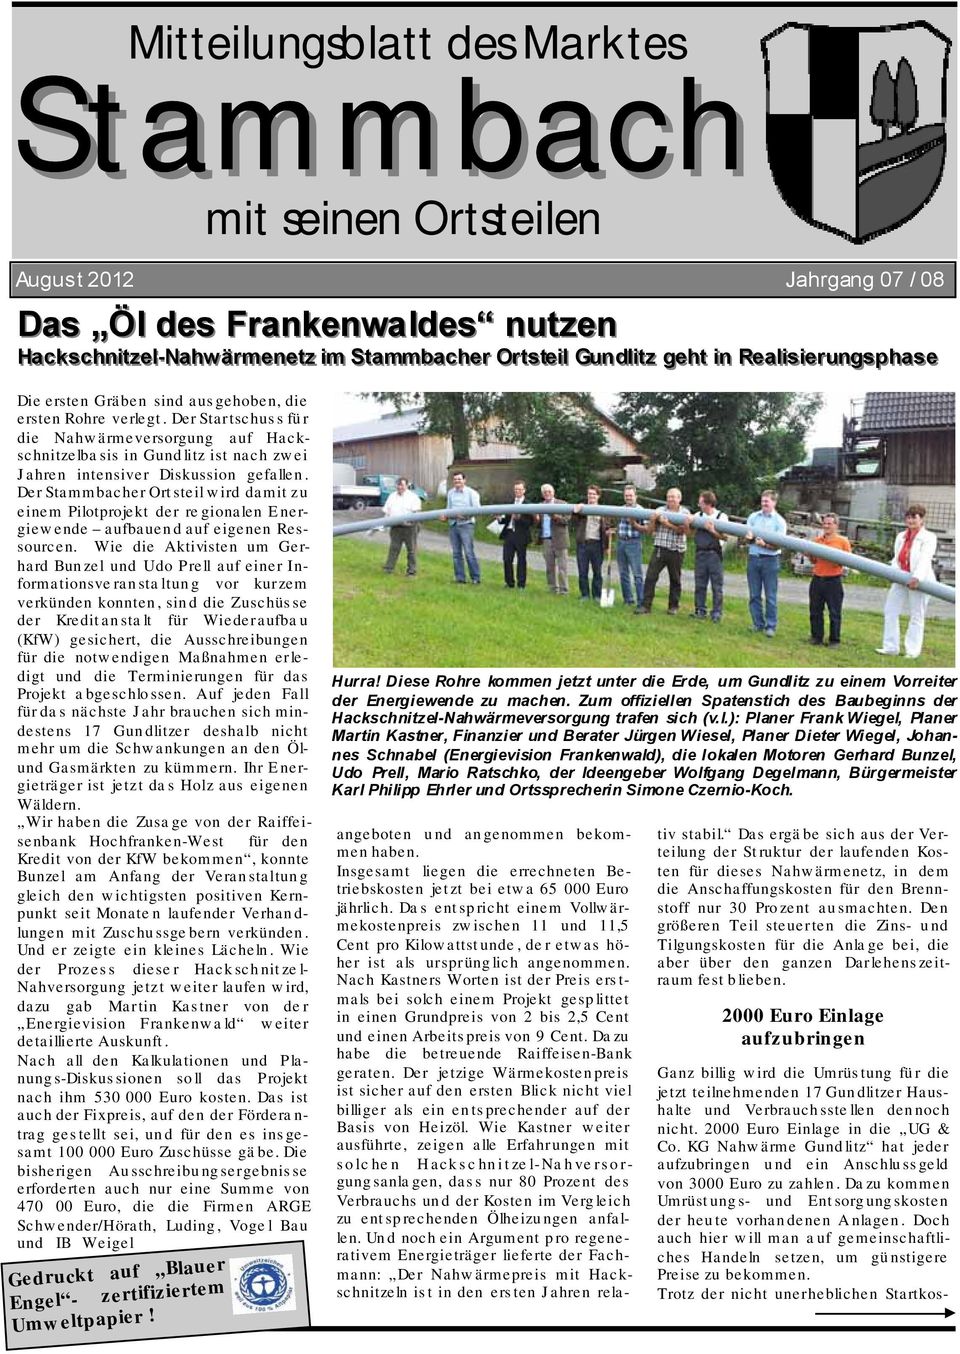 Der Startschuss für die Nahwärmeversorgung auf Hackschnitzelbasis in Gundlitz ist nach zwei Jahren intensiver Diskussion gefallen.